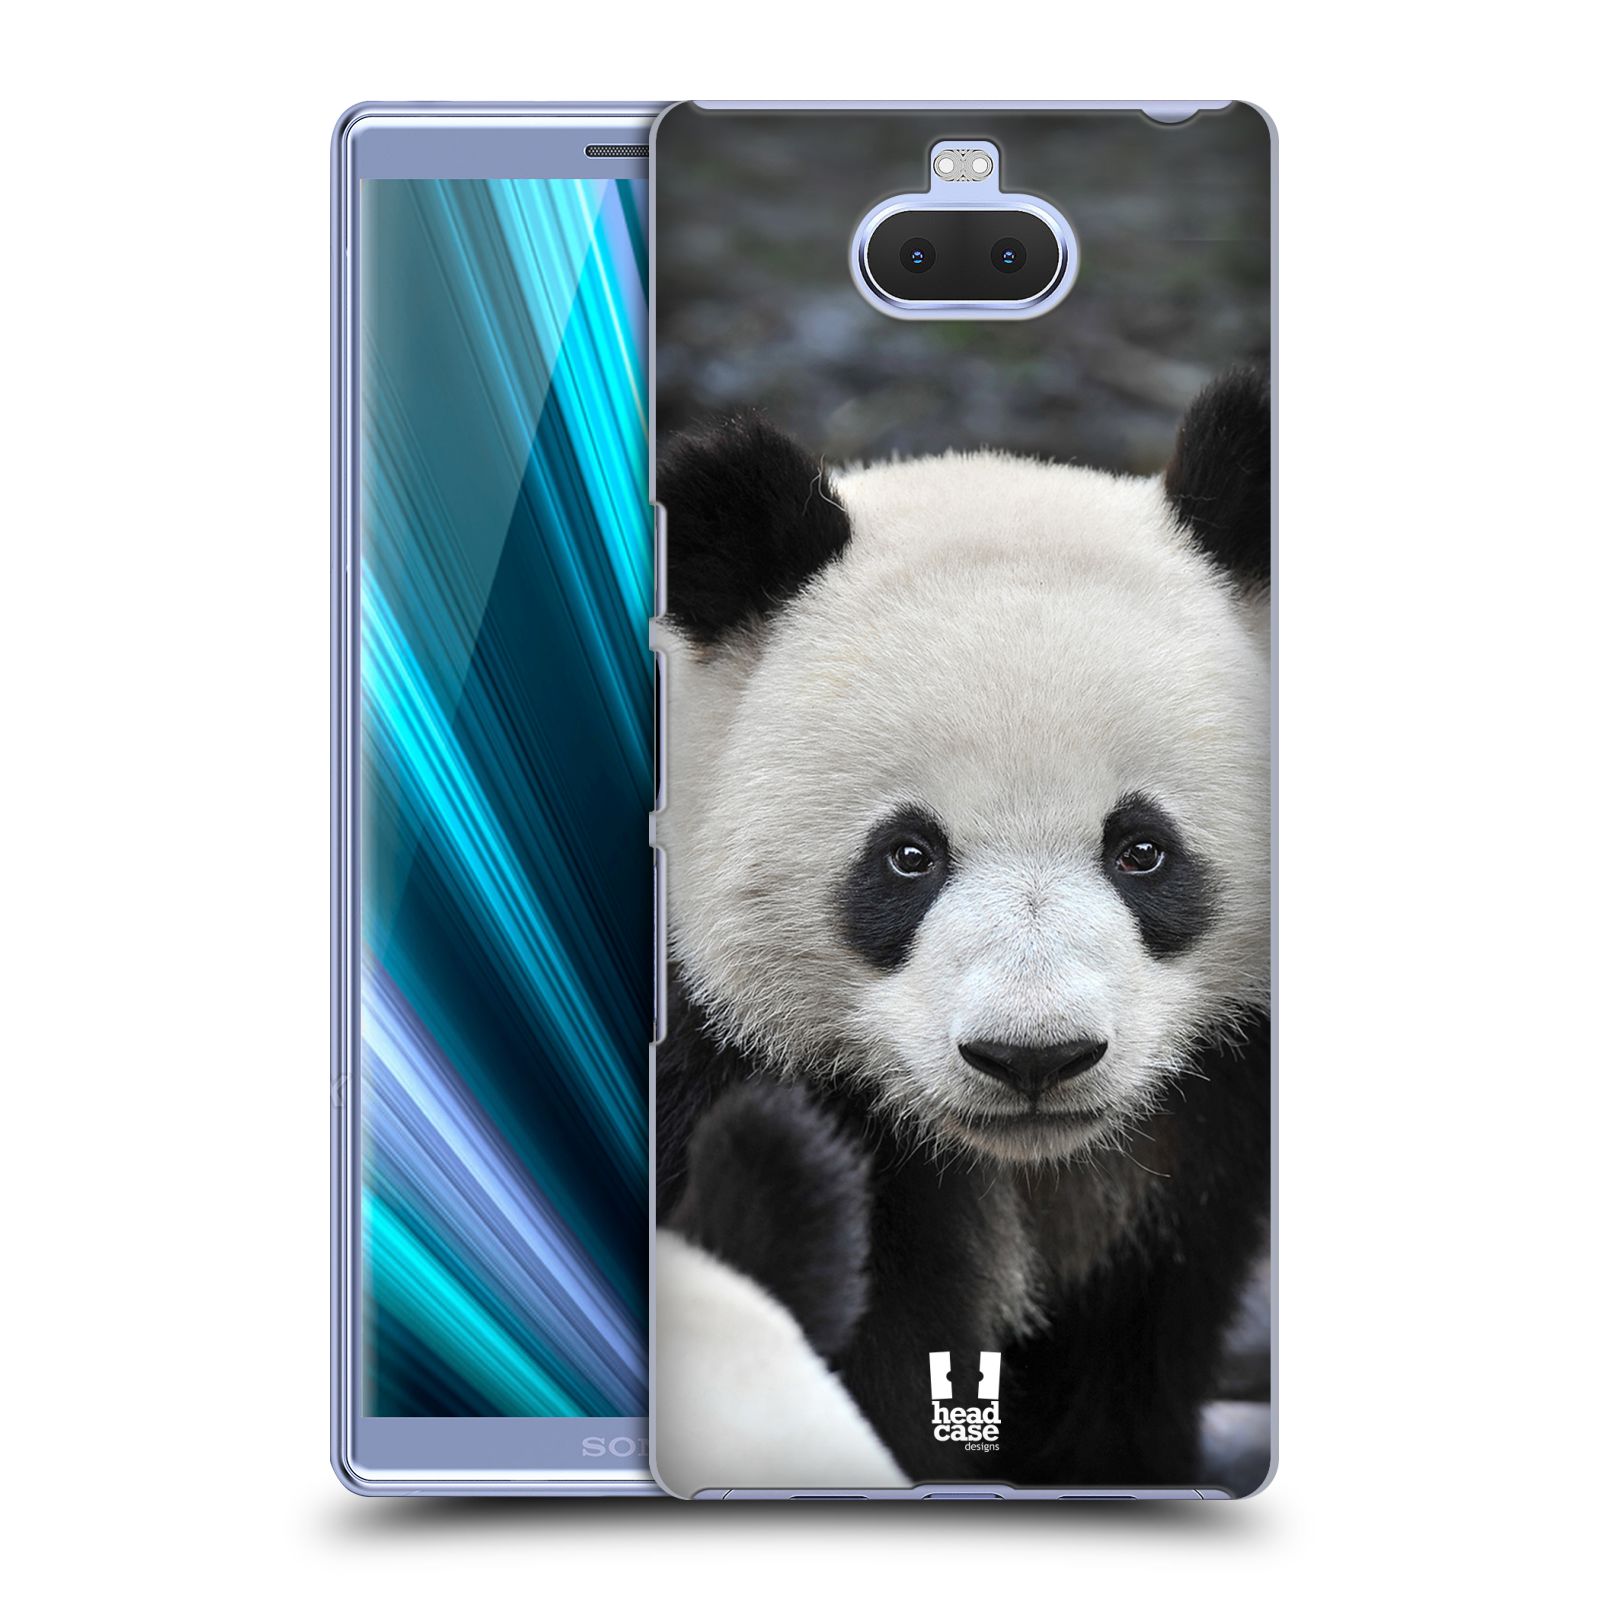 Zadní obal pro mobil Sony Xperia 10 - HEAD CASE - Svět zvířat medvěd panda